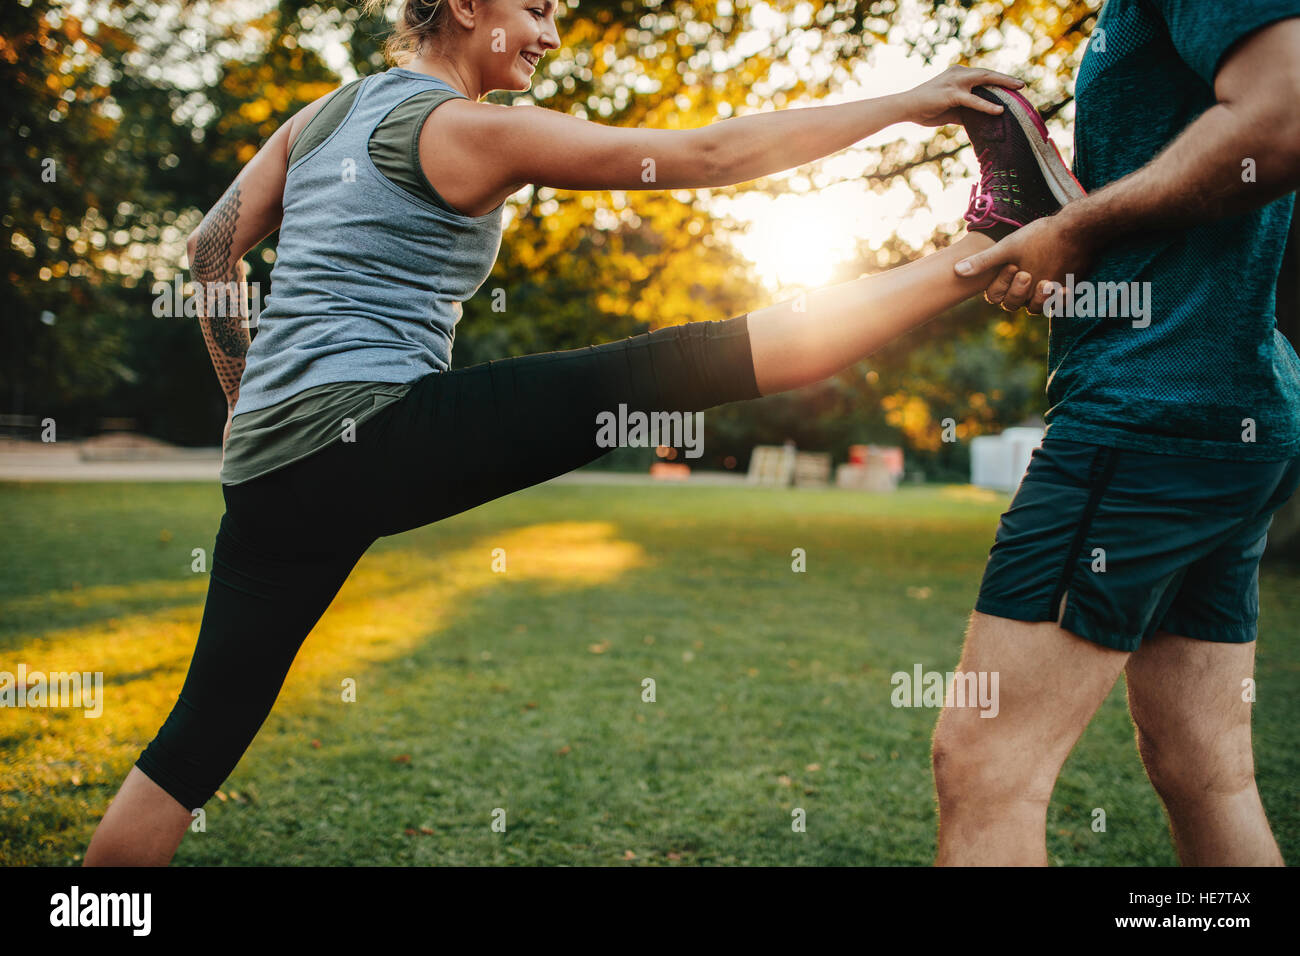 Passen Sie junge Frau tun stretching-Übungen mit Hilfe eines personal Trainers in Park. Trainer halten weibliche Bein. Stockfoto